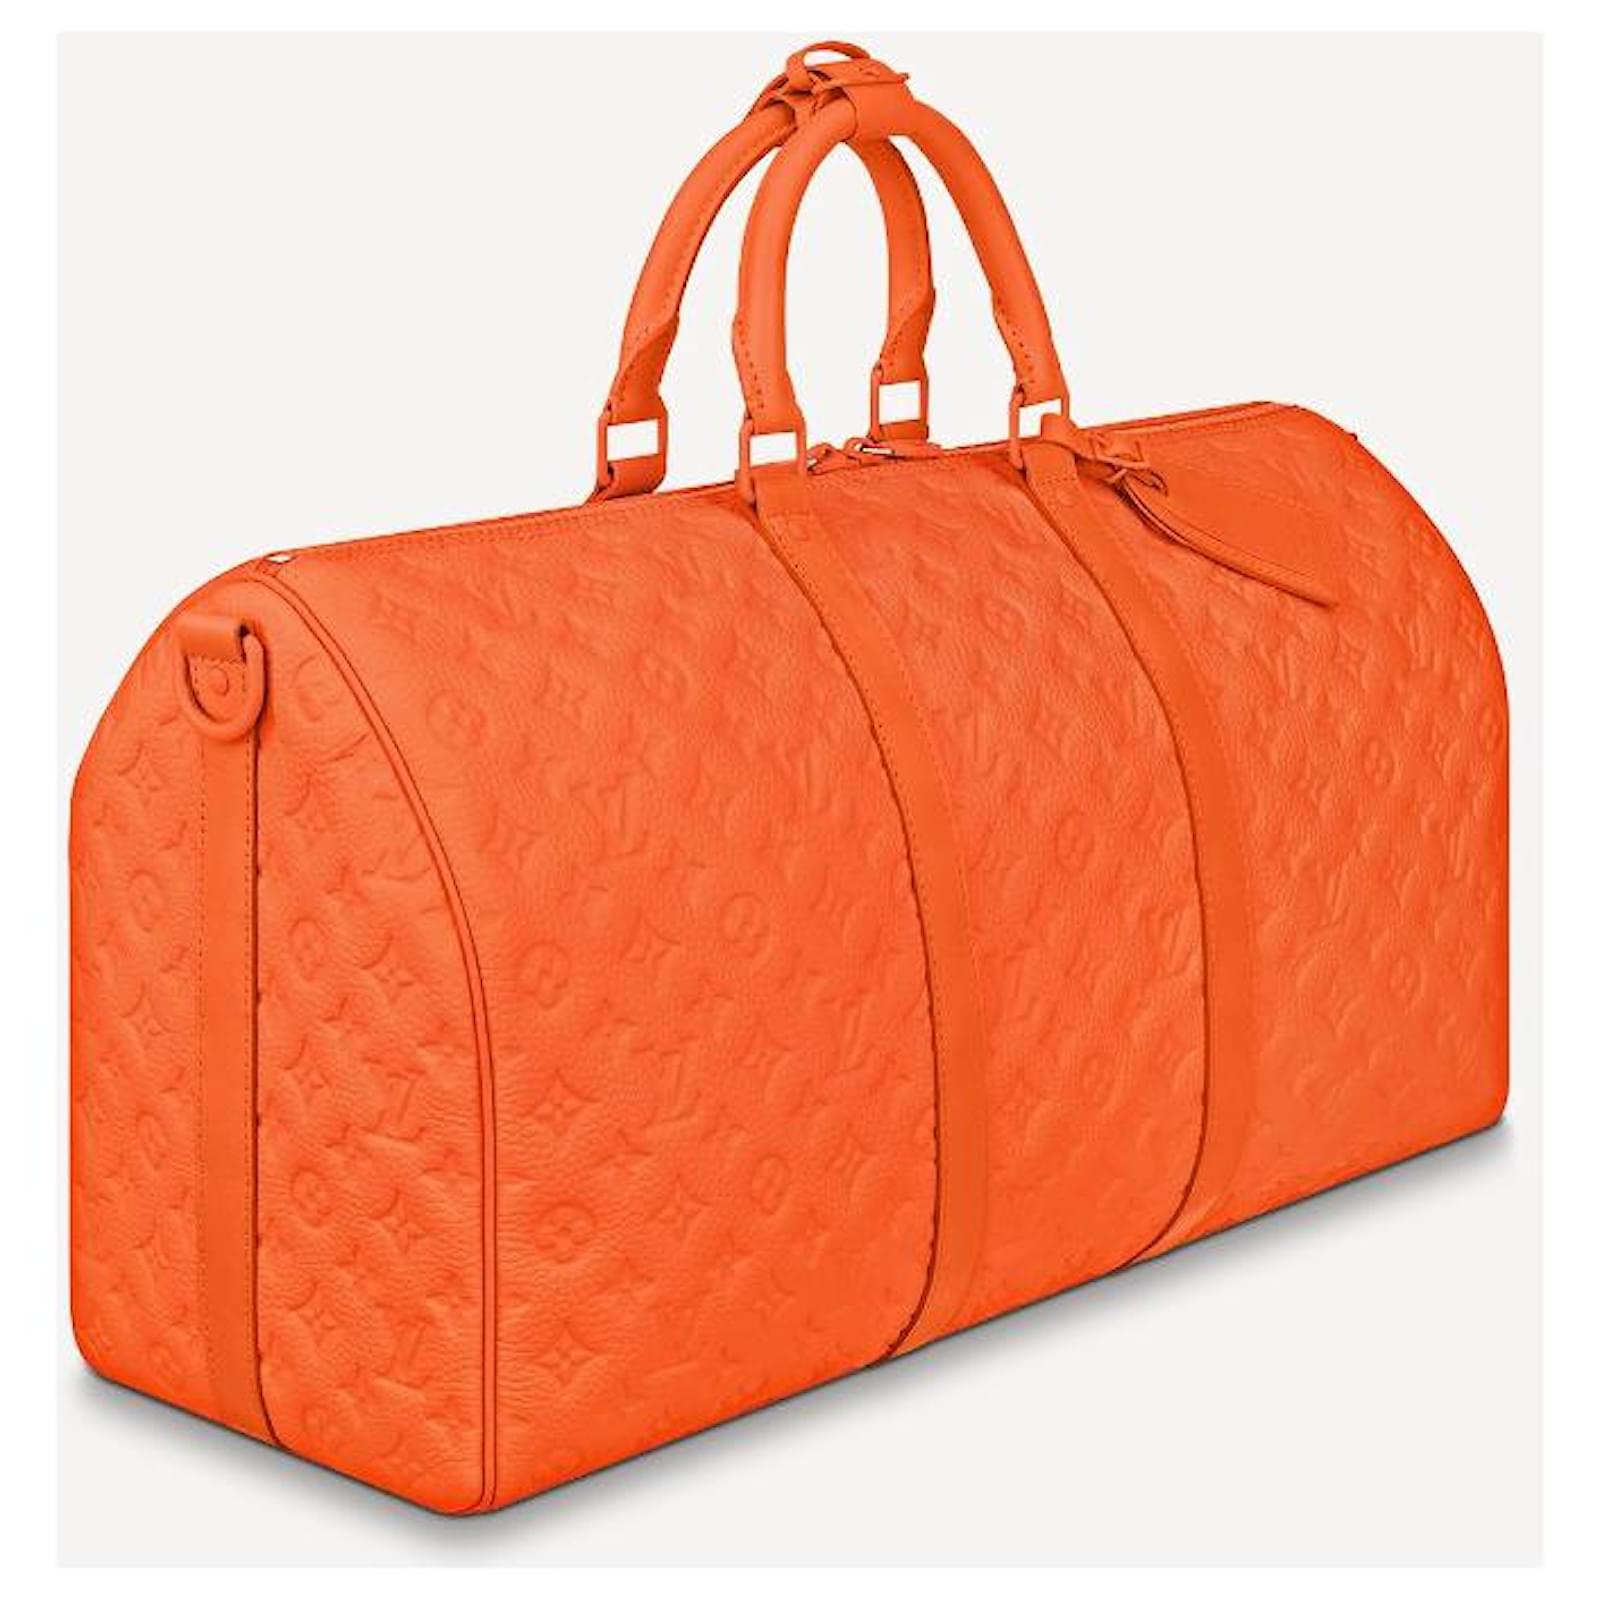 Louis Vuitton 2009 Pre-Owned Keepall Reisetasche 50cm - Orange für